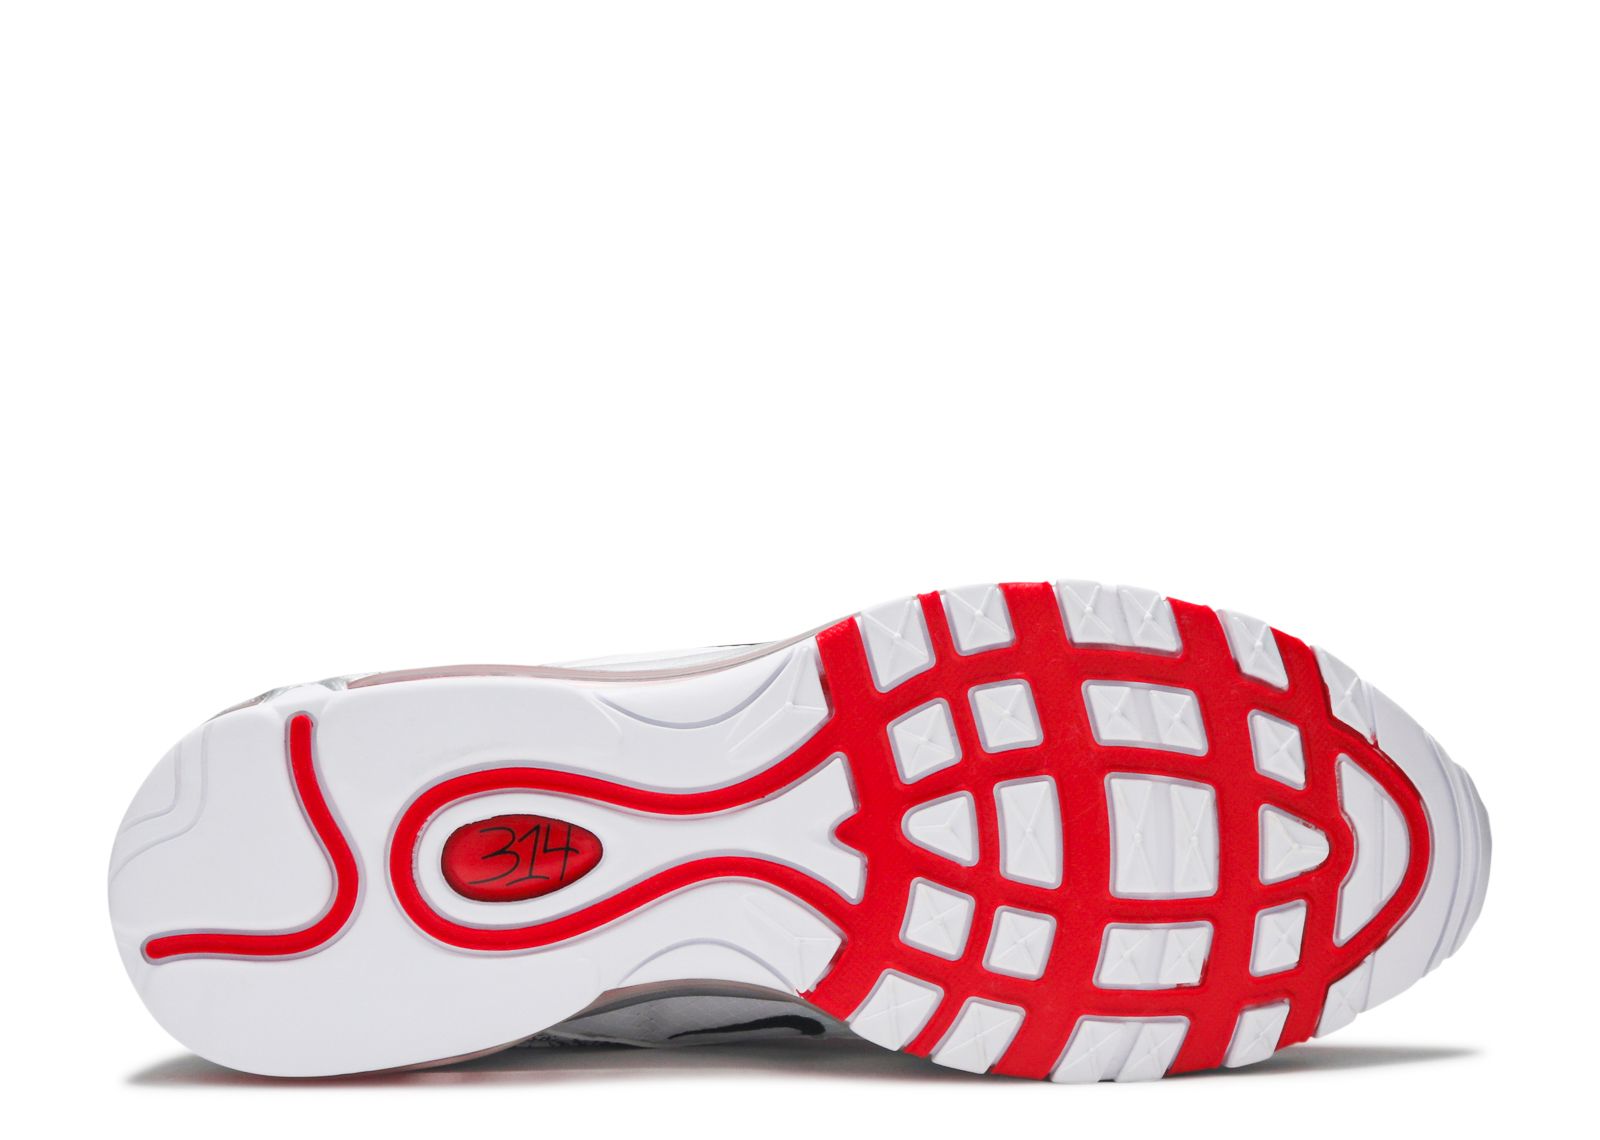 Nike Air Max 97 GS Jayson Tatum St. Louis Roots Shoes Men's Size 5.5 =  Women's 7